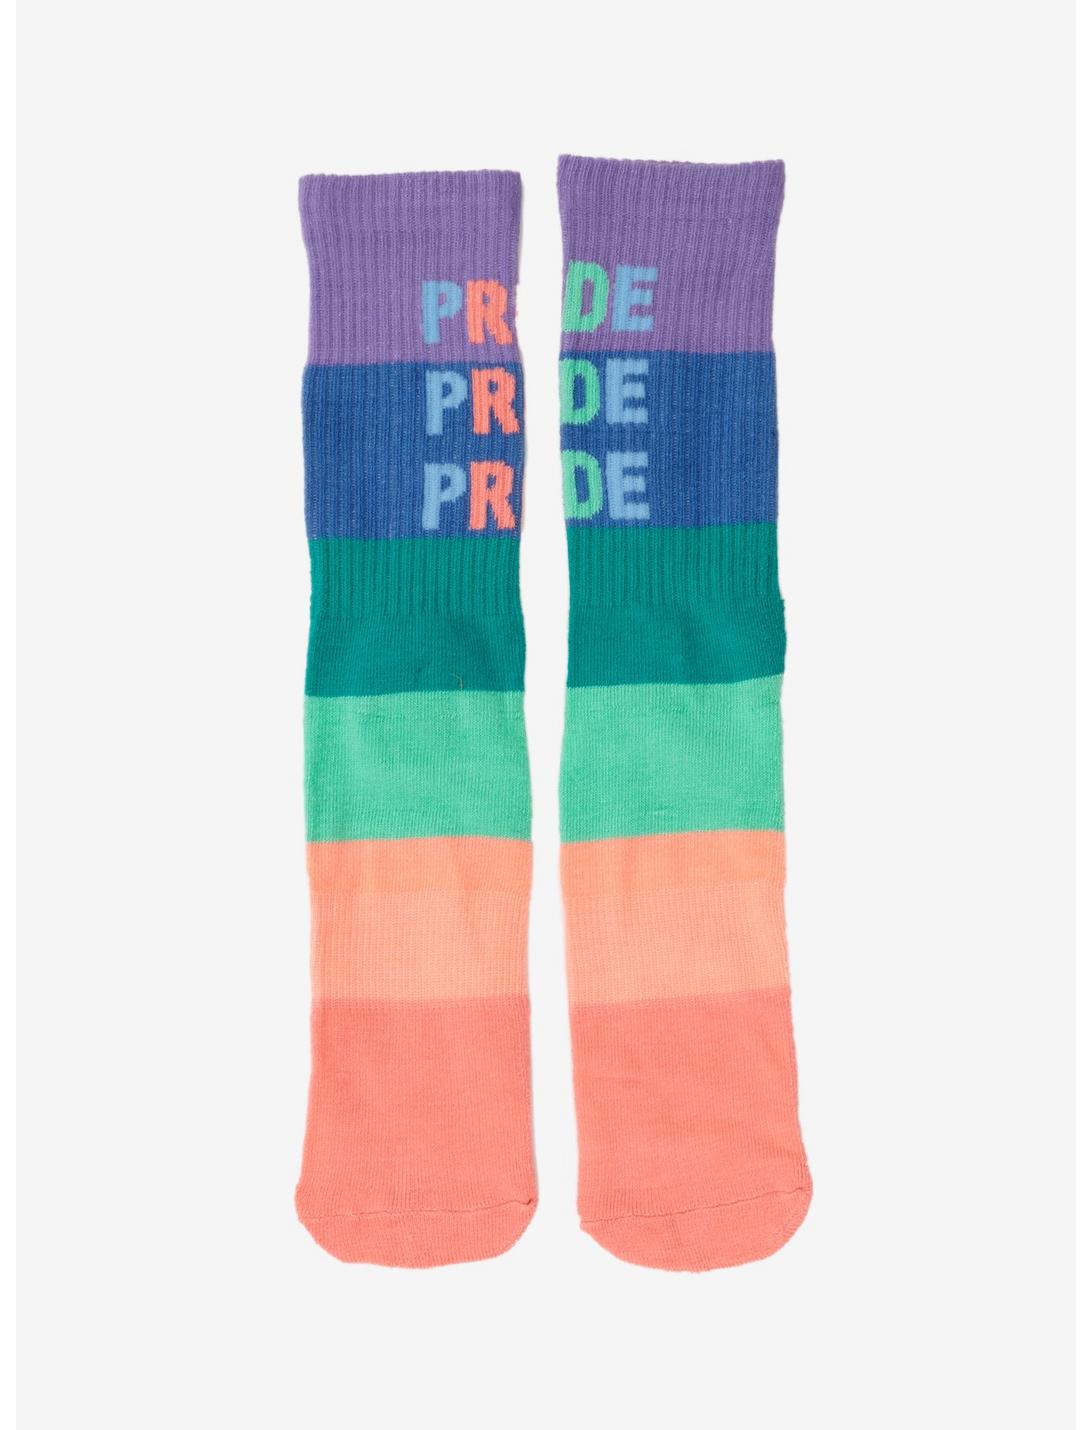 Pride Pride Pride Gradient Crew Socks - BoxLunch Exclusive, , hi-res